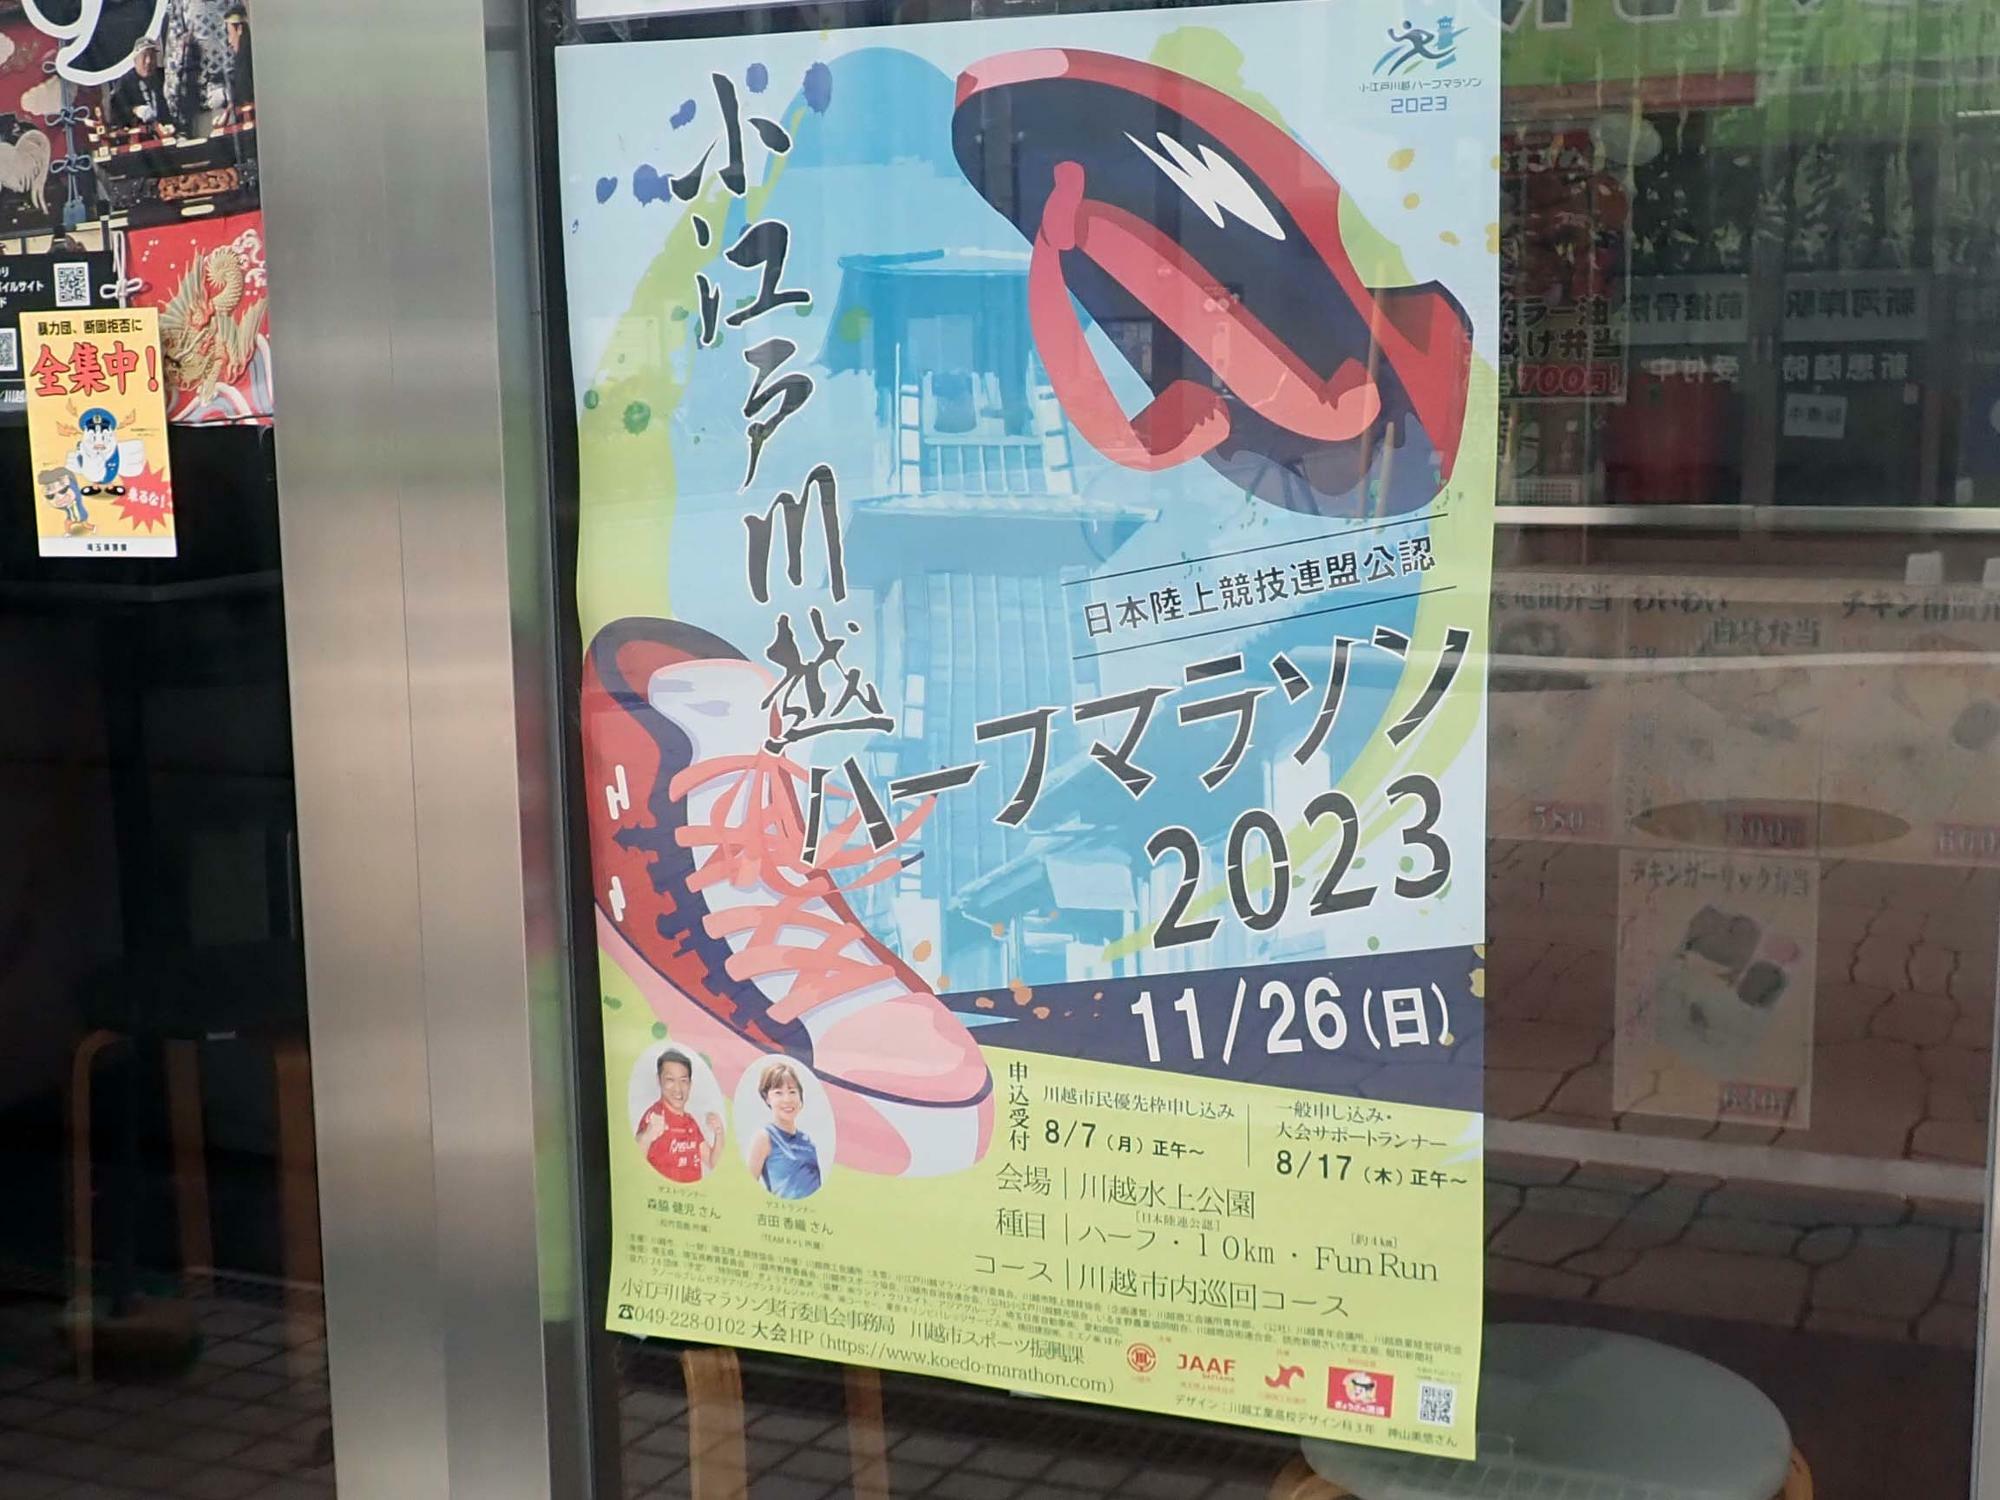 川越市内のいろいろな施設でポスターが掲示されています